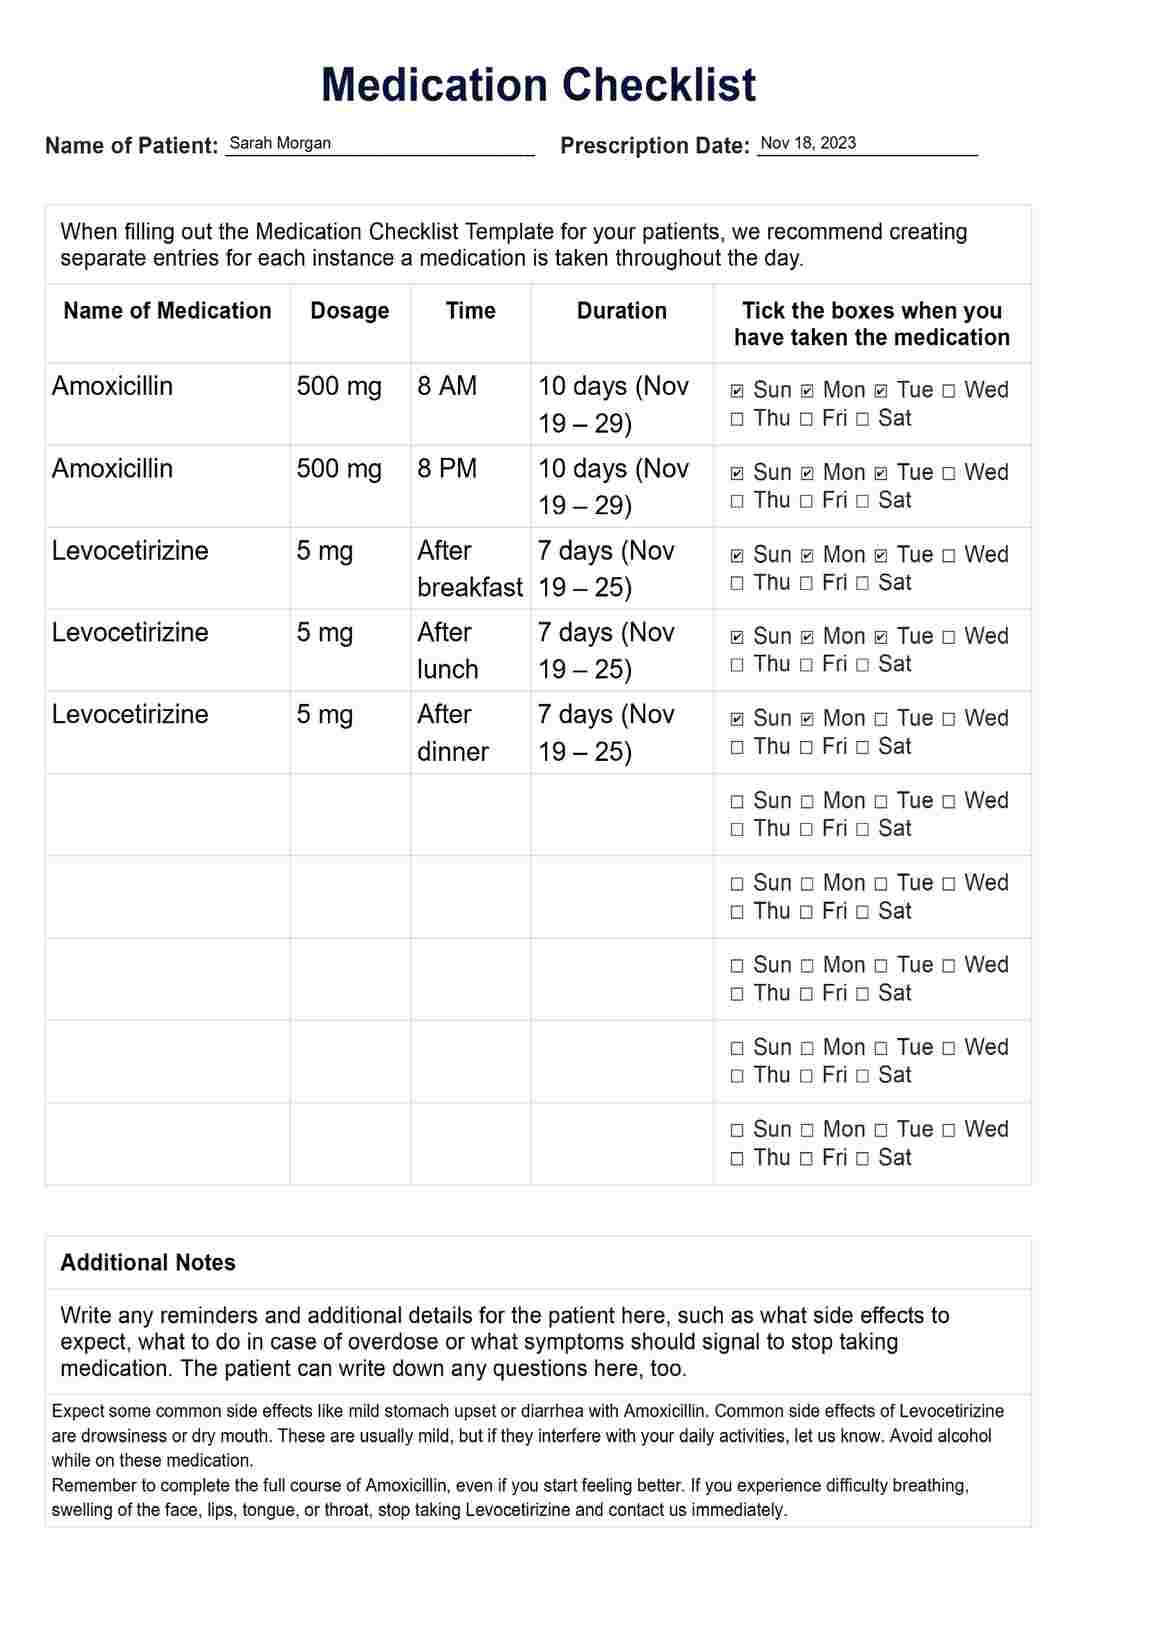 Checklist de Medicación PDF Example